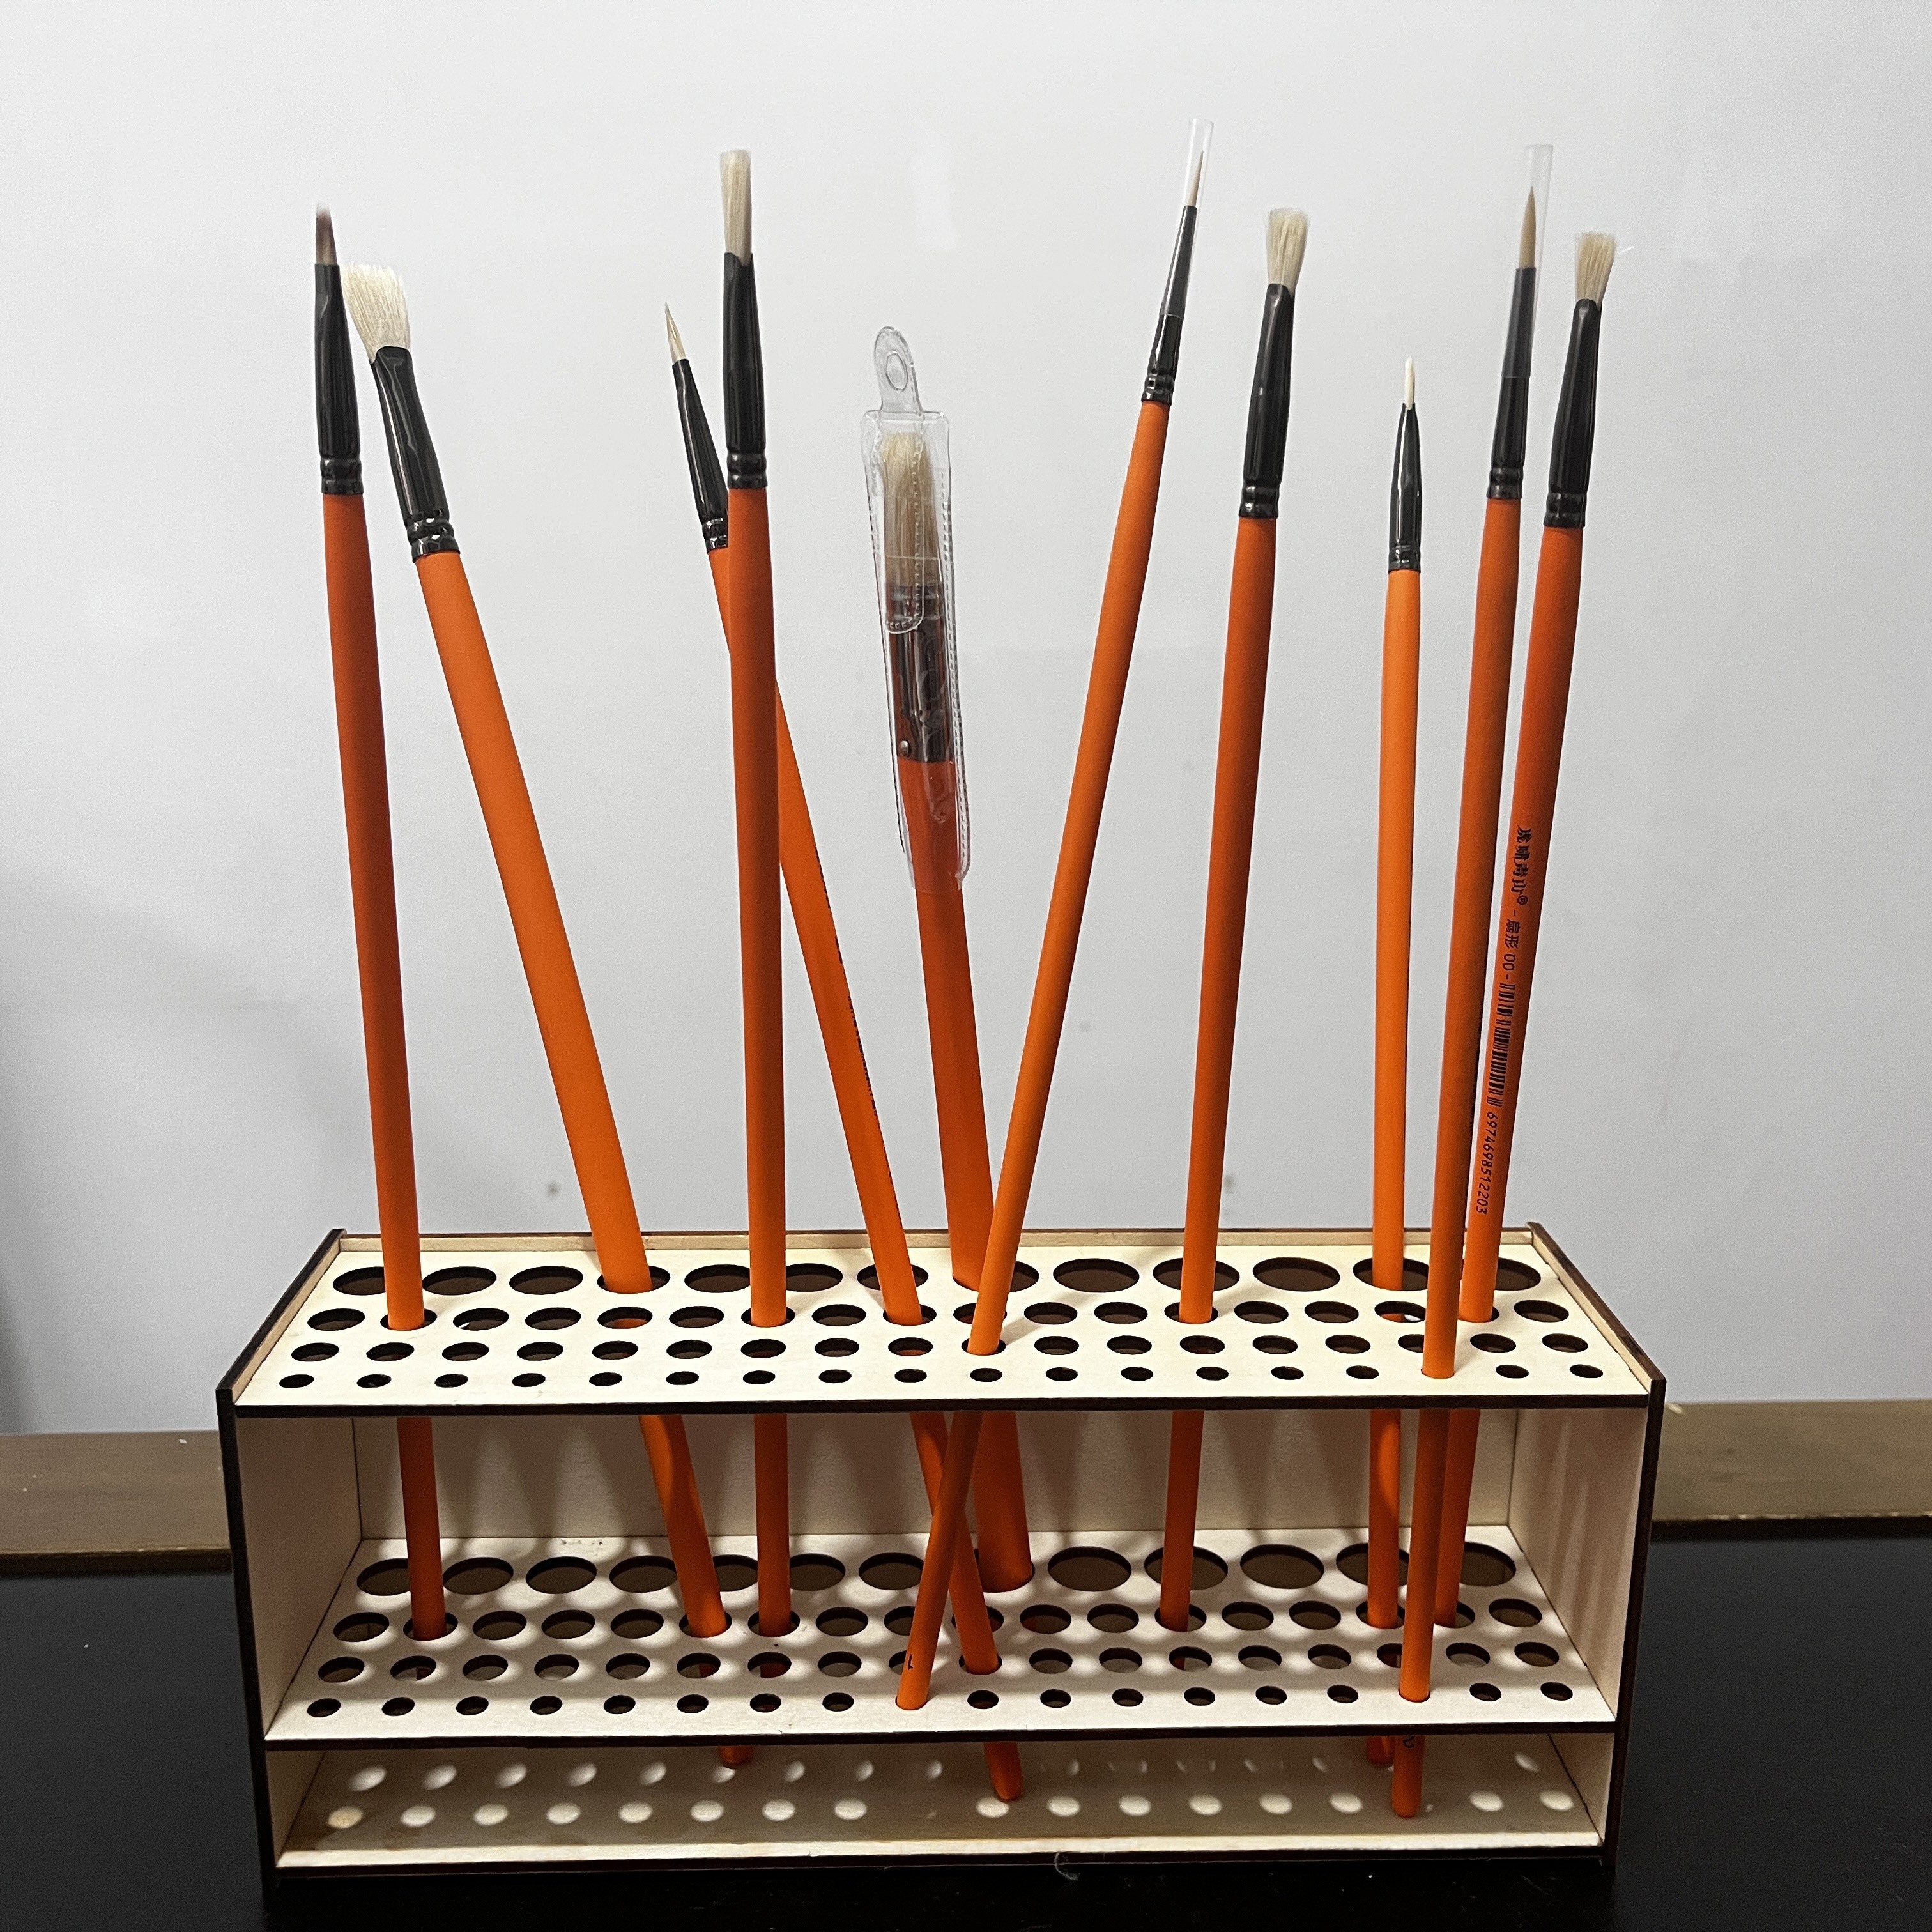  proturbo Upgraded Wooden Pen Organizer Handmade Paint Brush  Holder Art Supply Organizer Large Capacity Pen Holder for Desk,Tool and Art